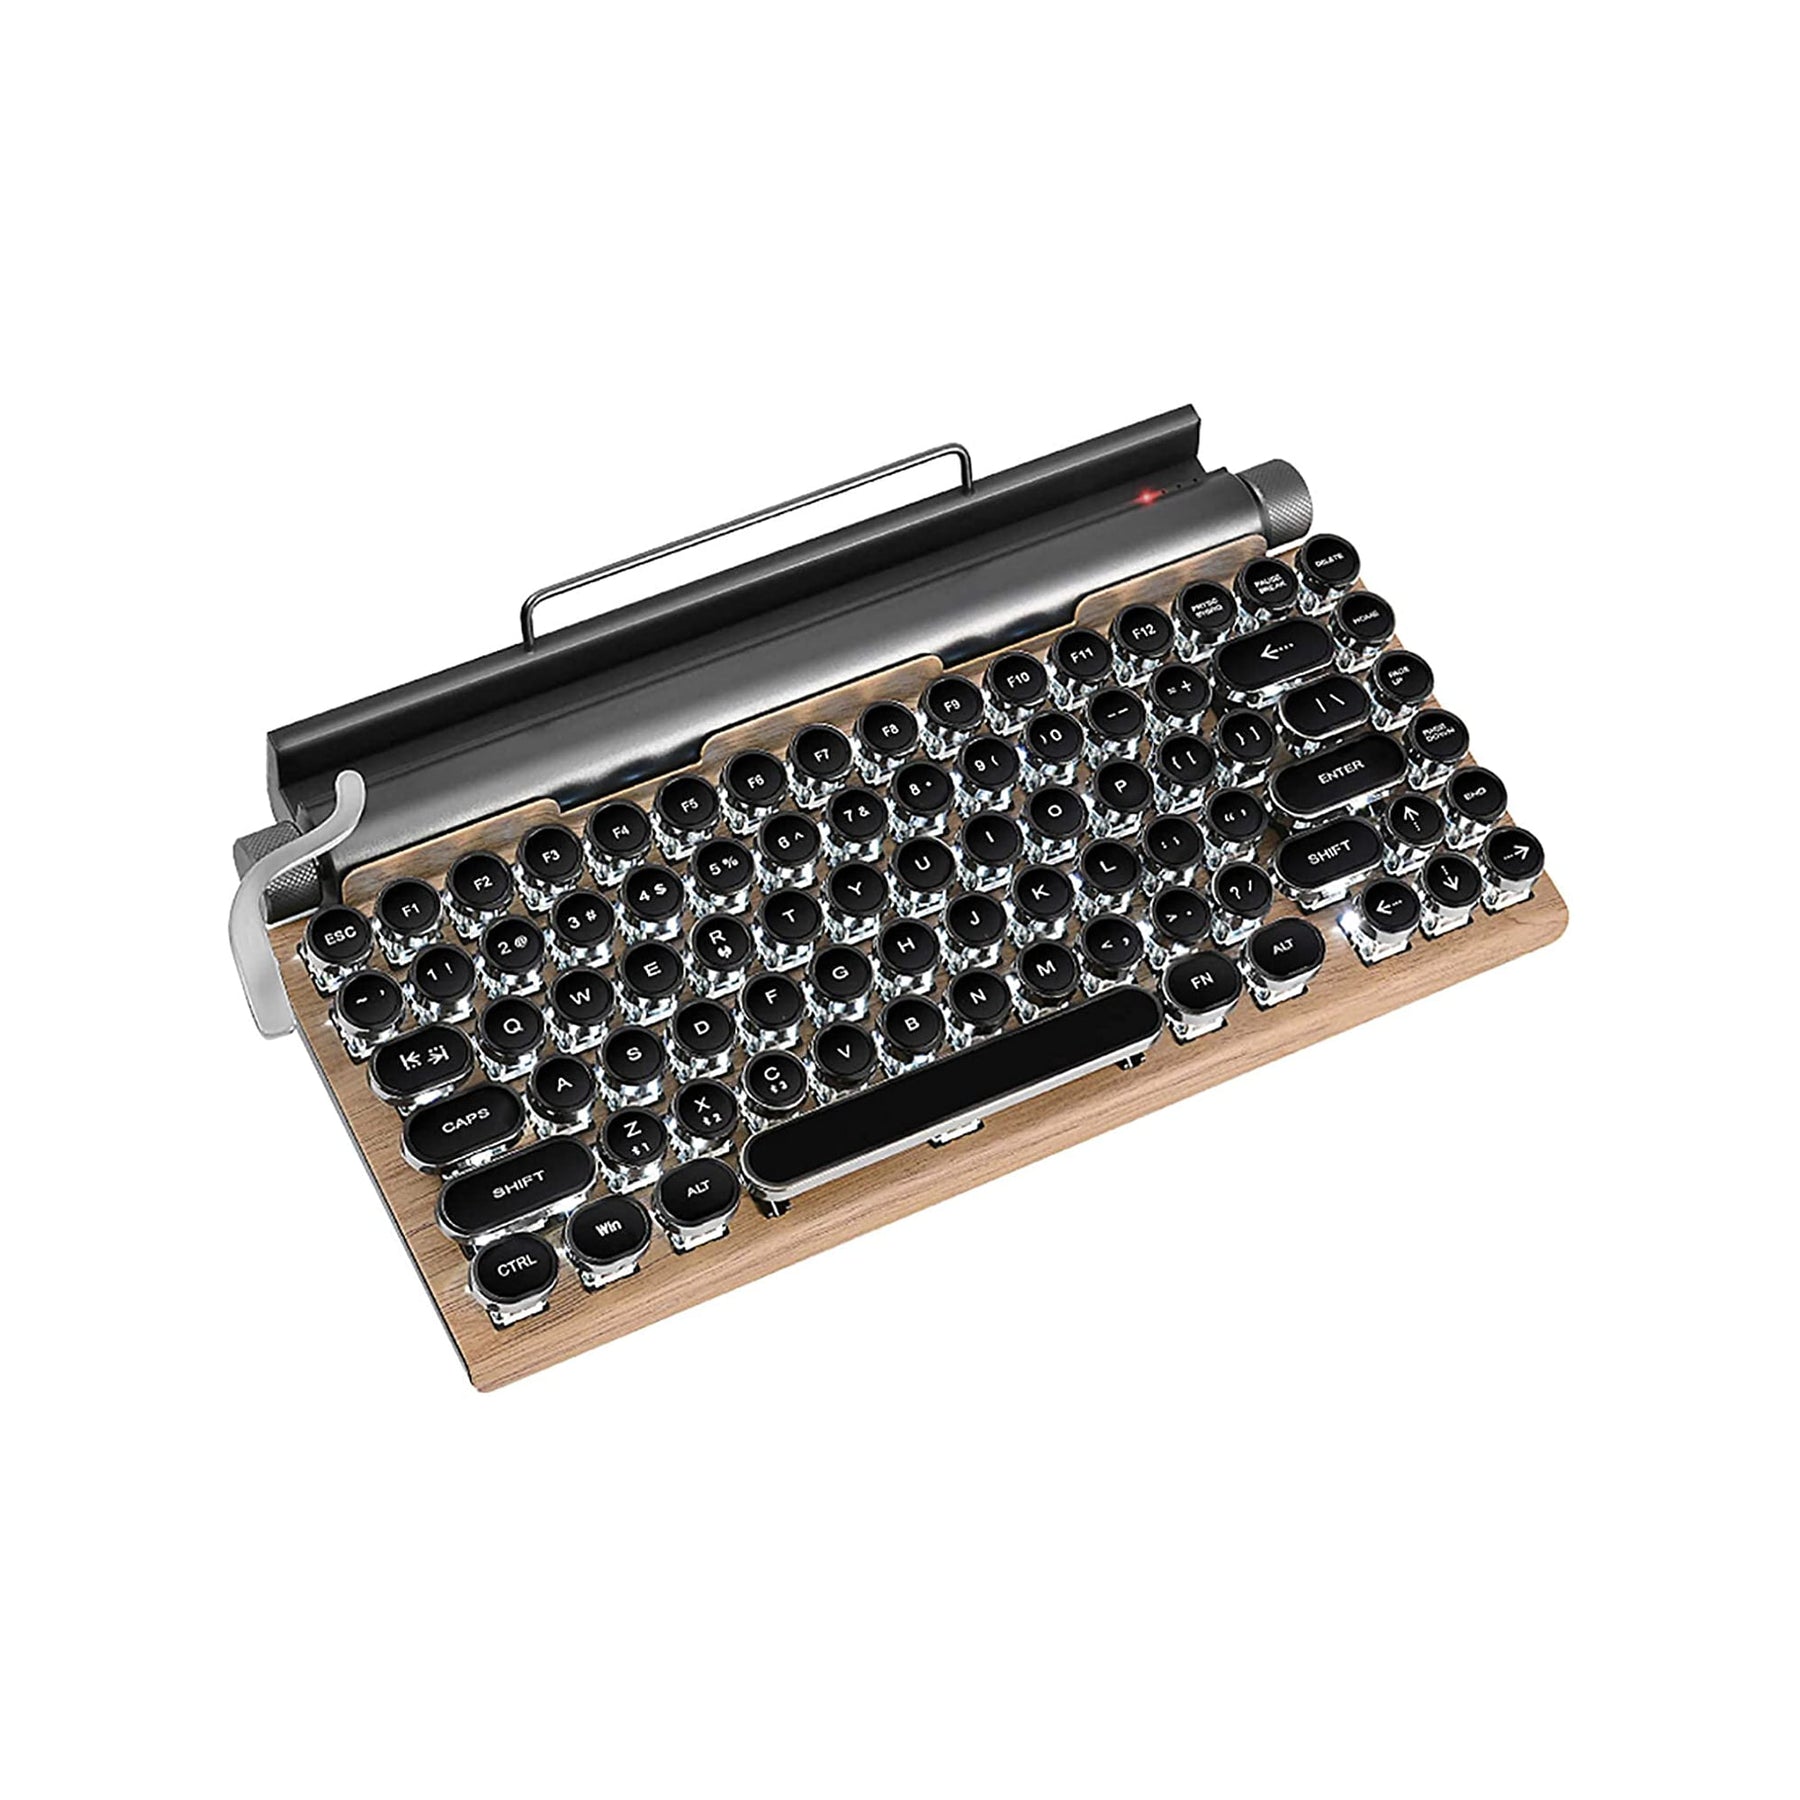 Retro Typewriter Keyboard for macOS